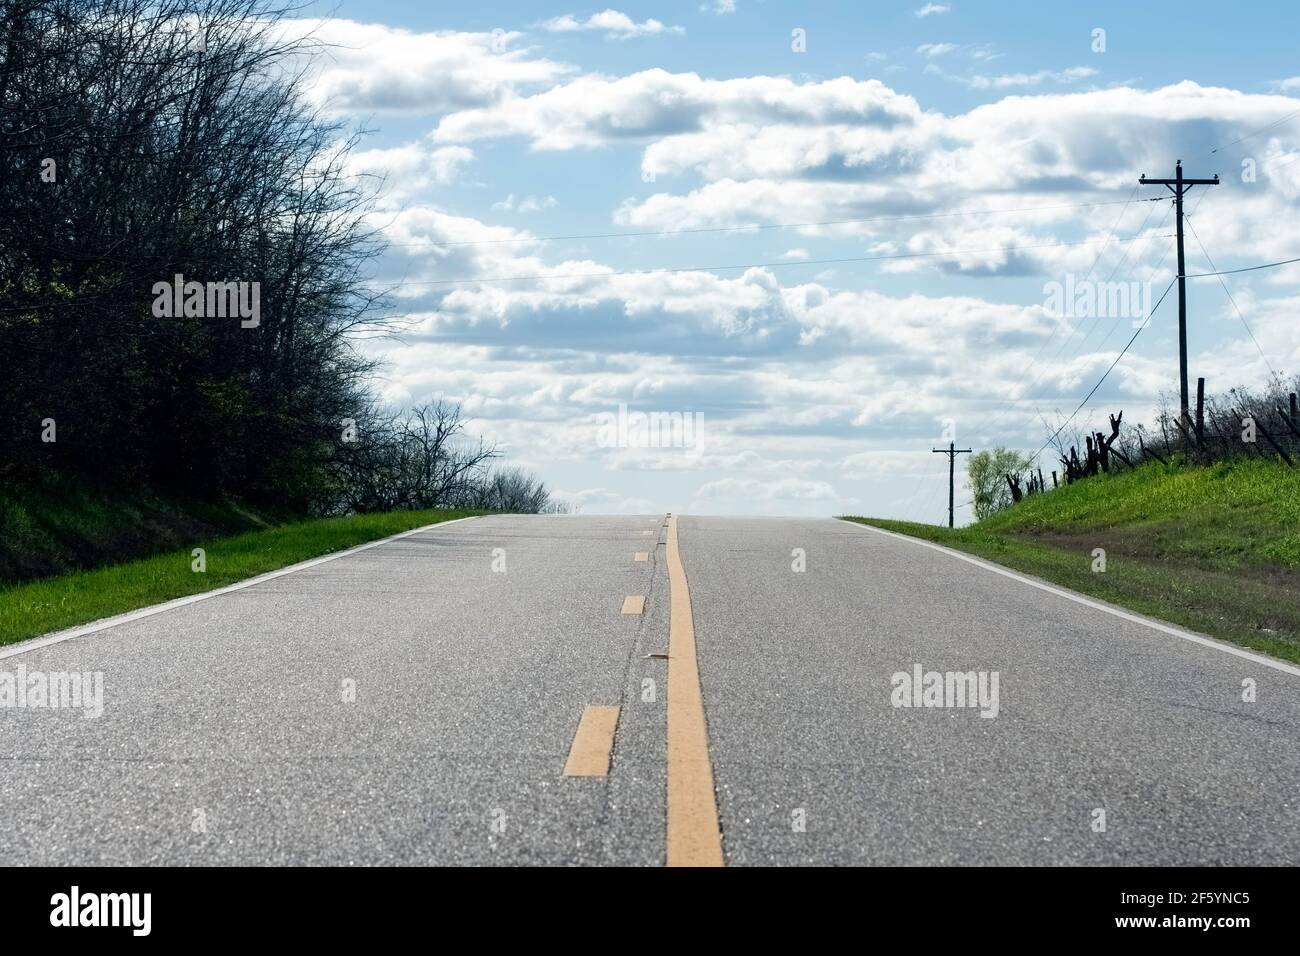 Photo d'une route rurale à deux voies qui monte une colline, apparemment dans les nuages du ciel. Banque D'Images